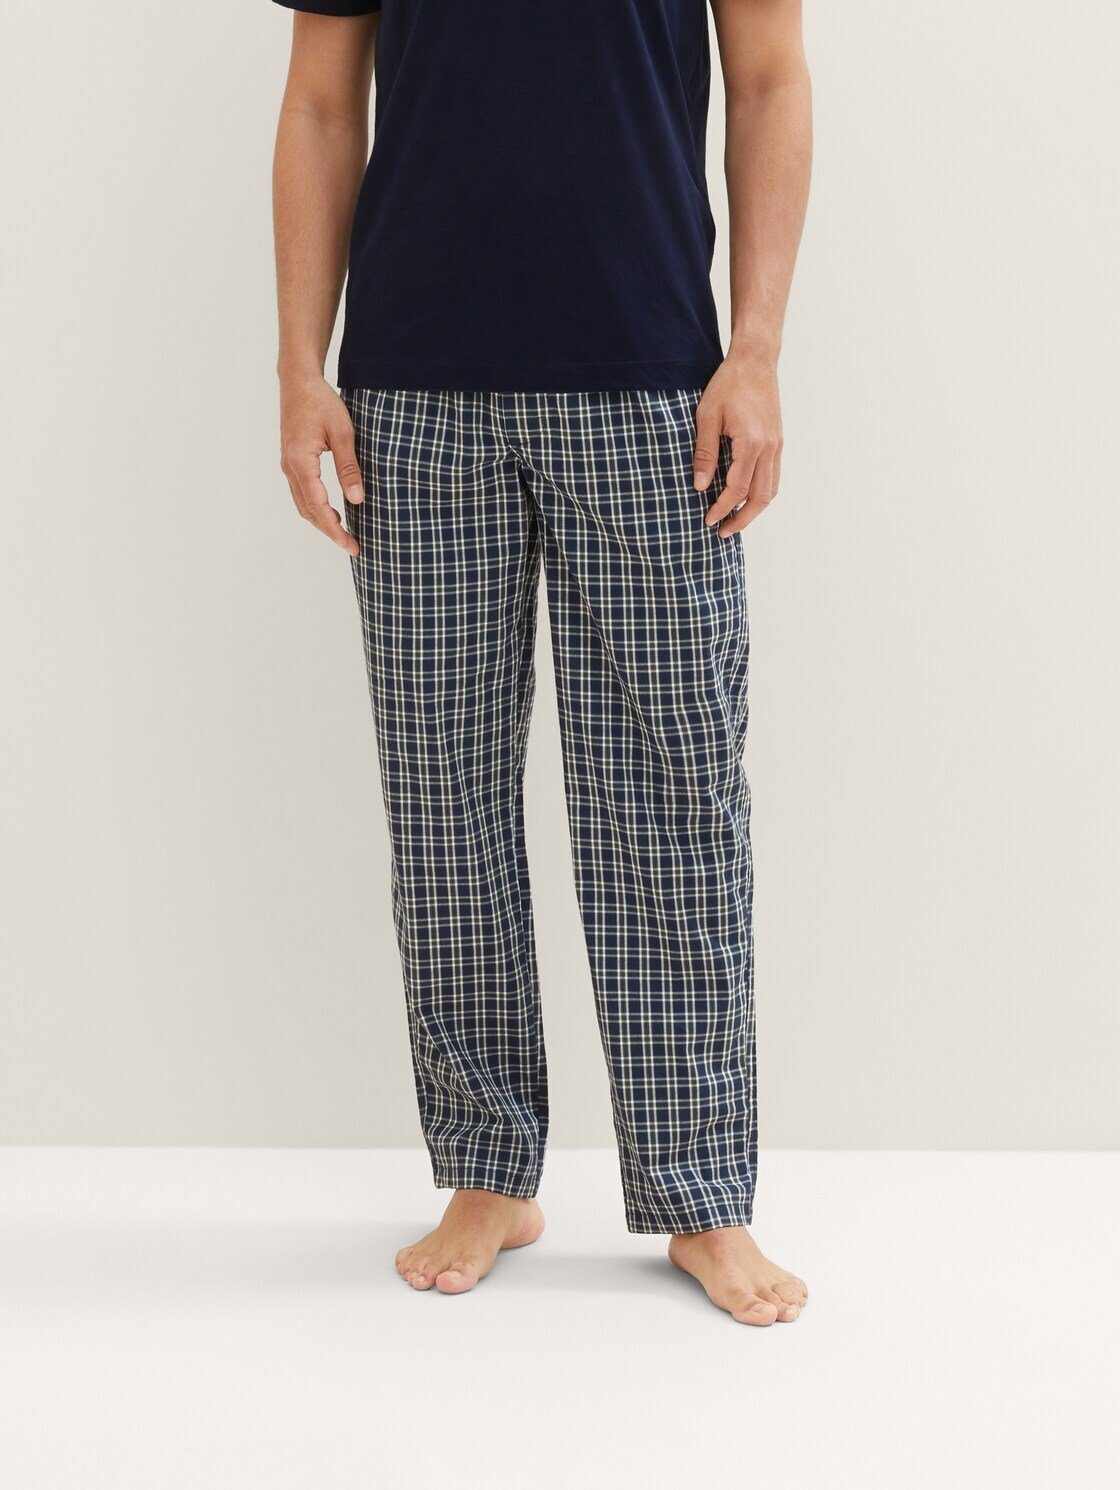 Pyjamahose TAILOR TOM Karomuster mit Schlafhose